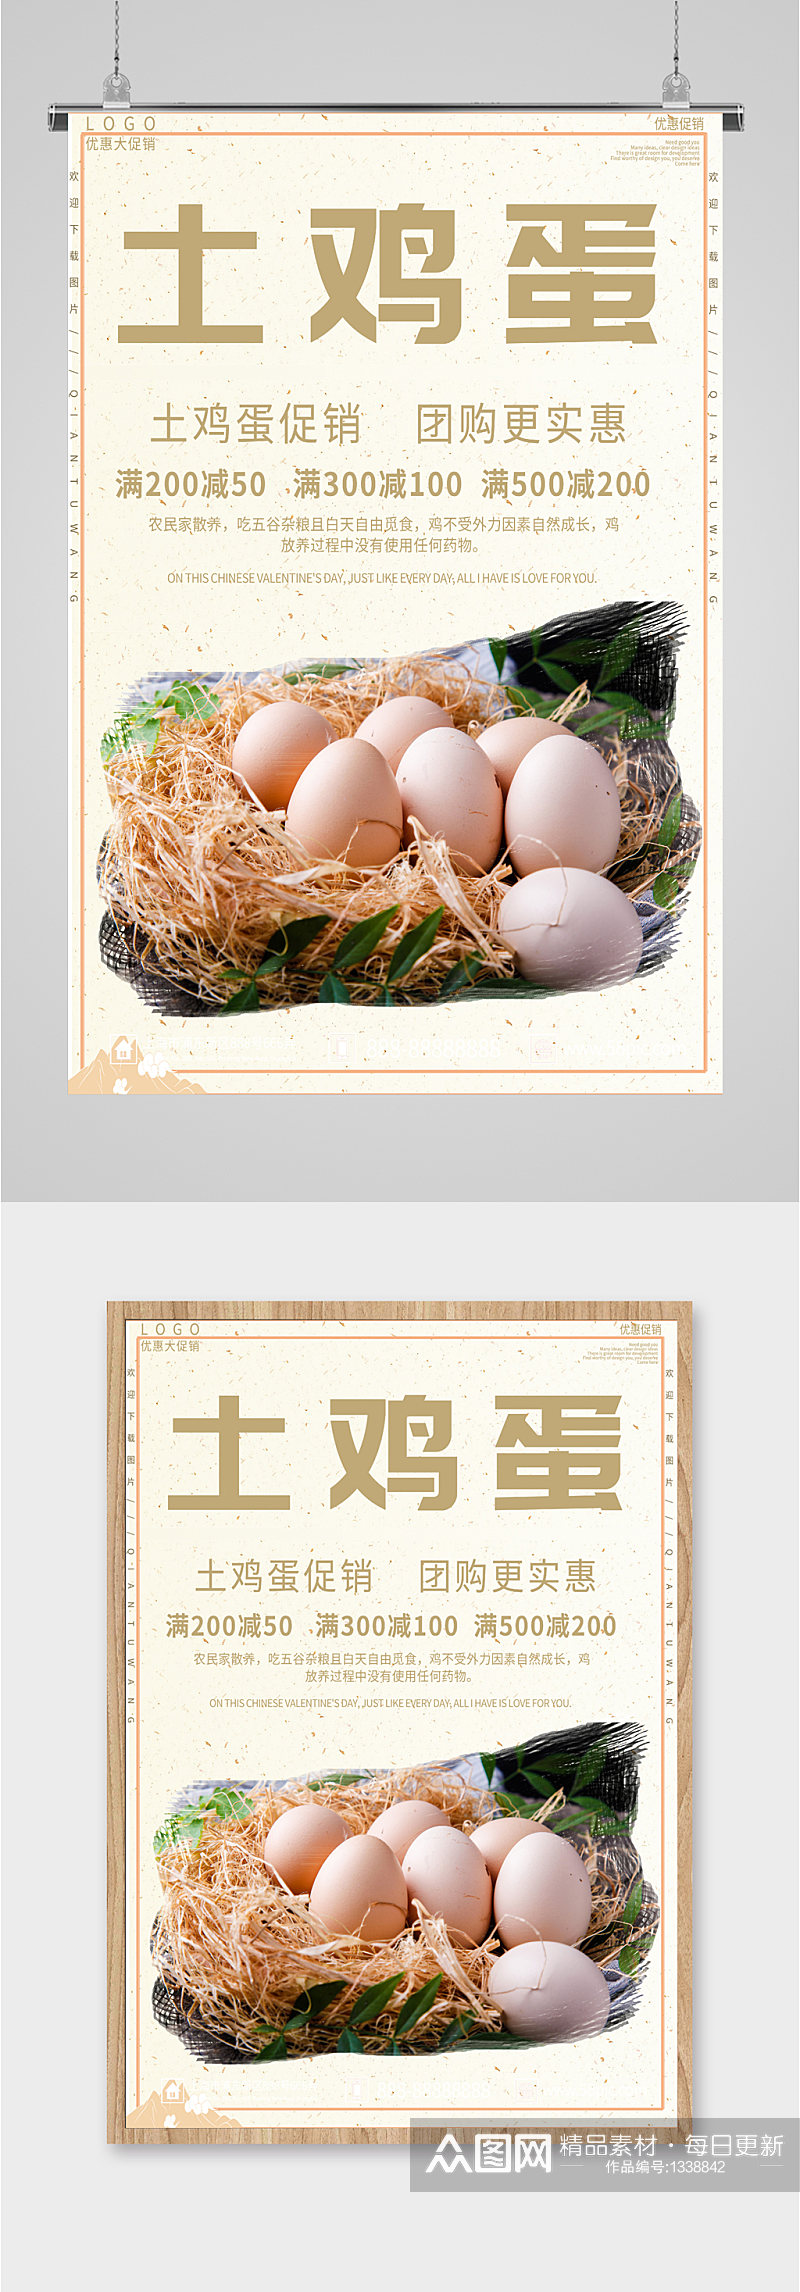 土鸡蛋土特产海报展板素材